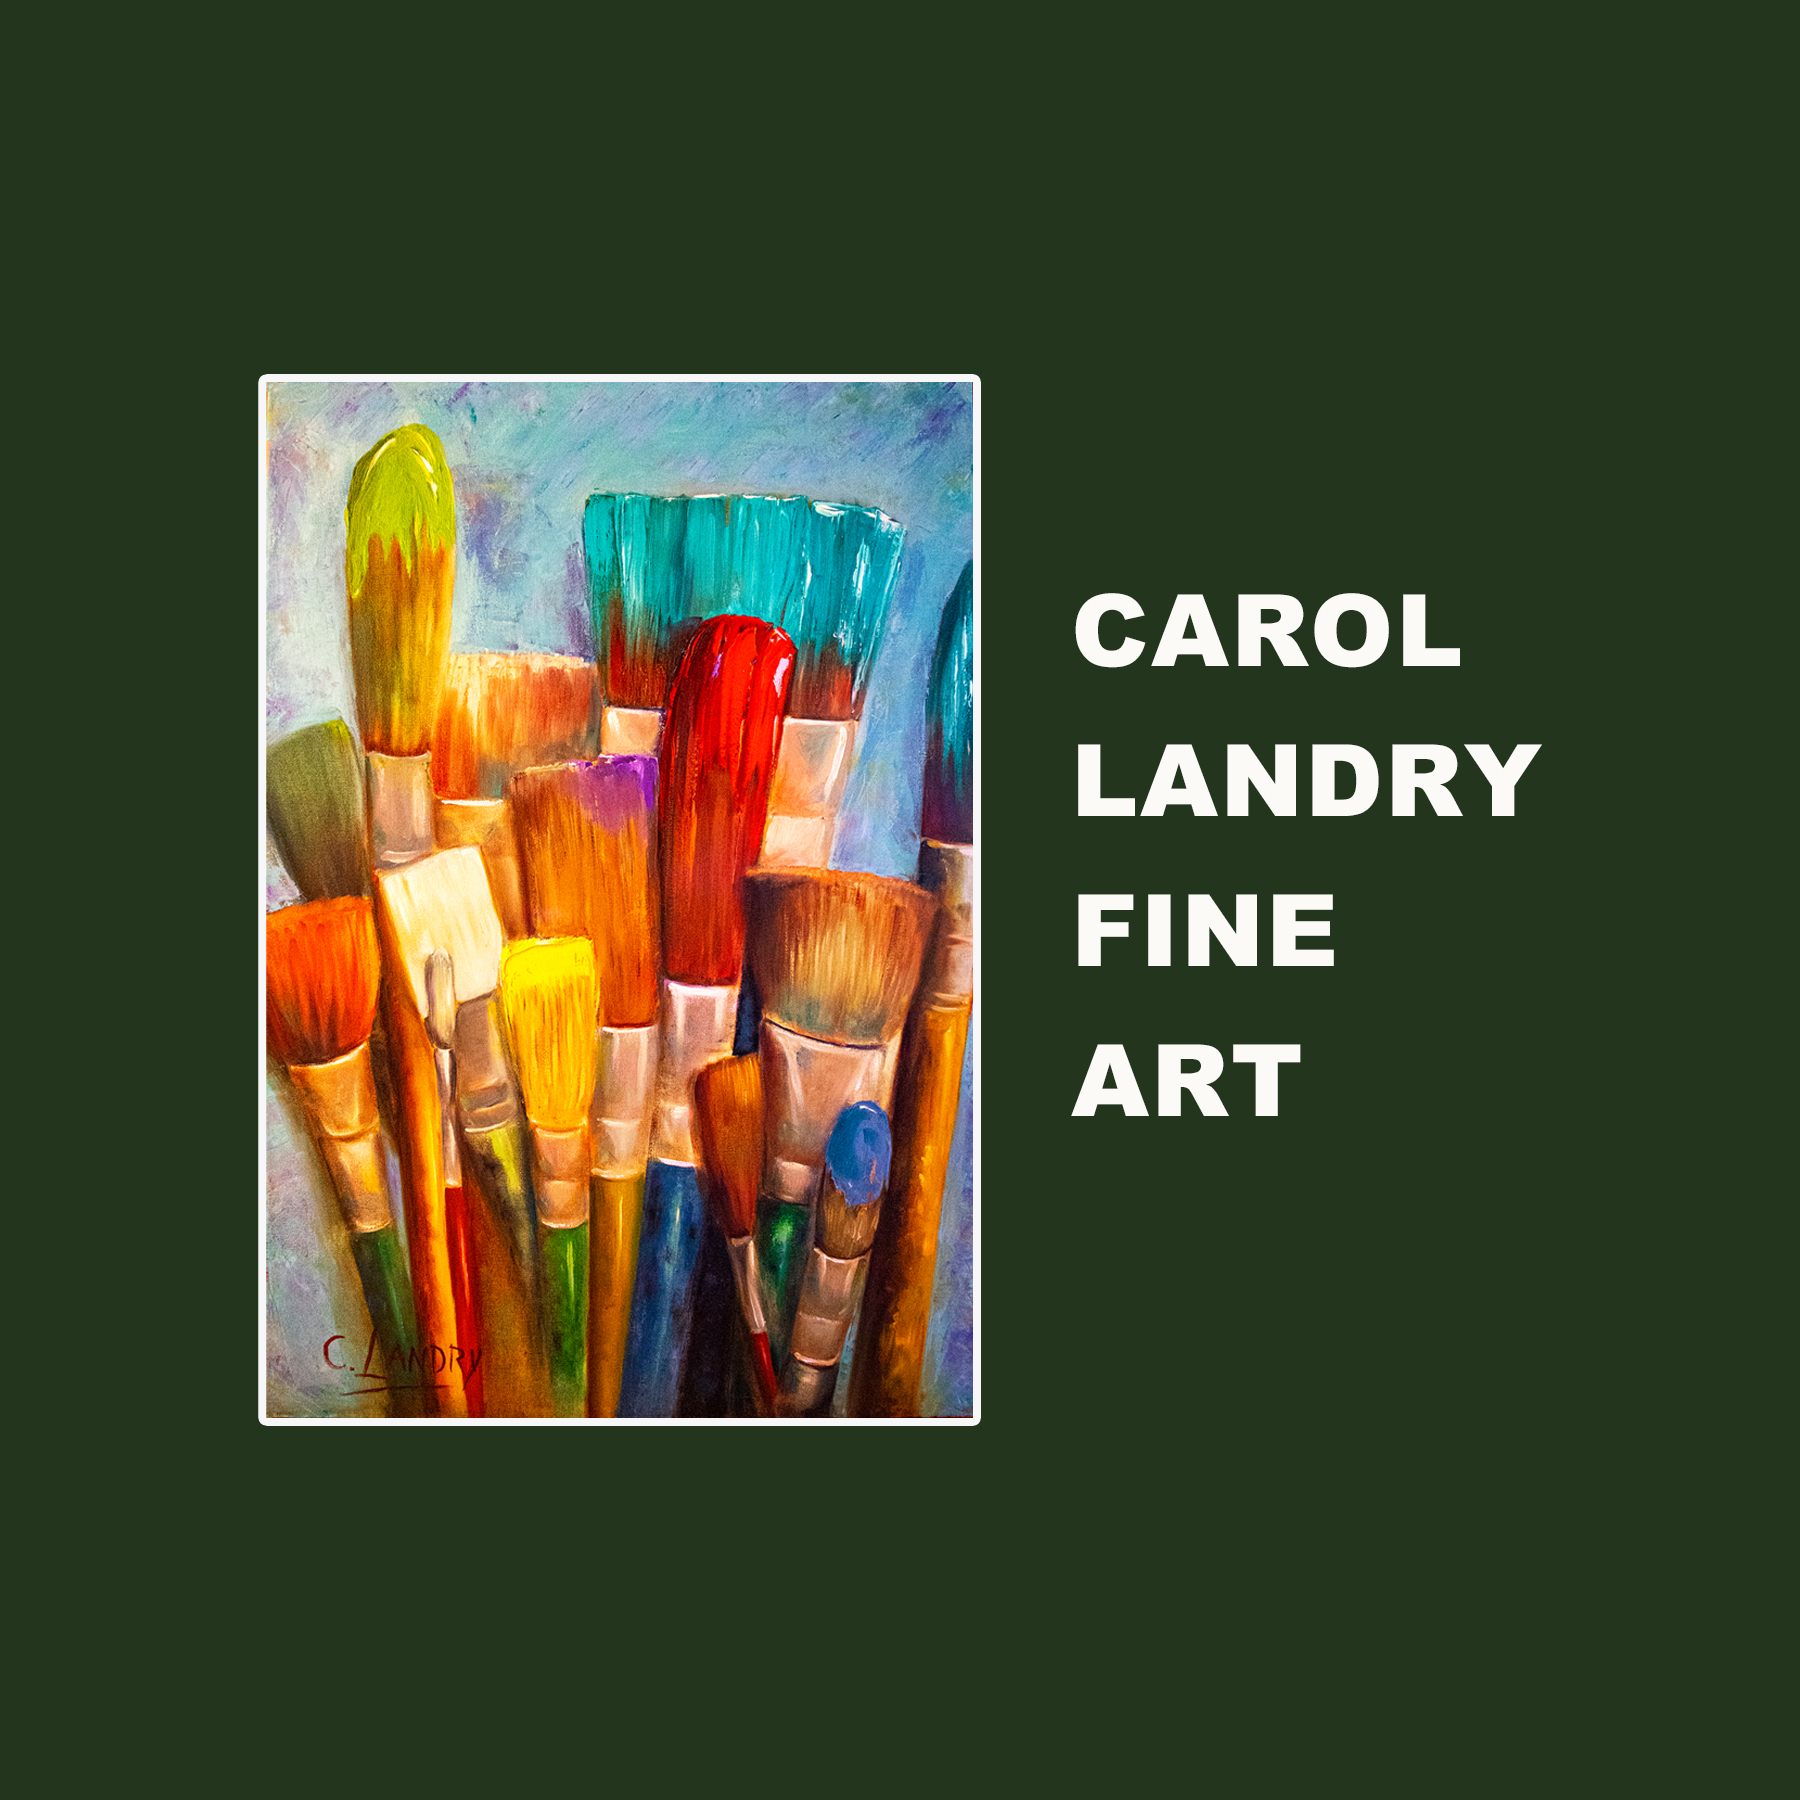 Carol Landry Fine Art